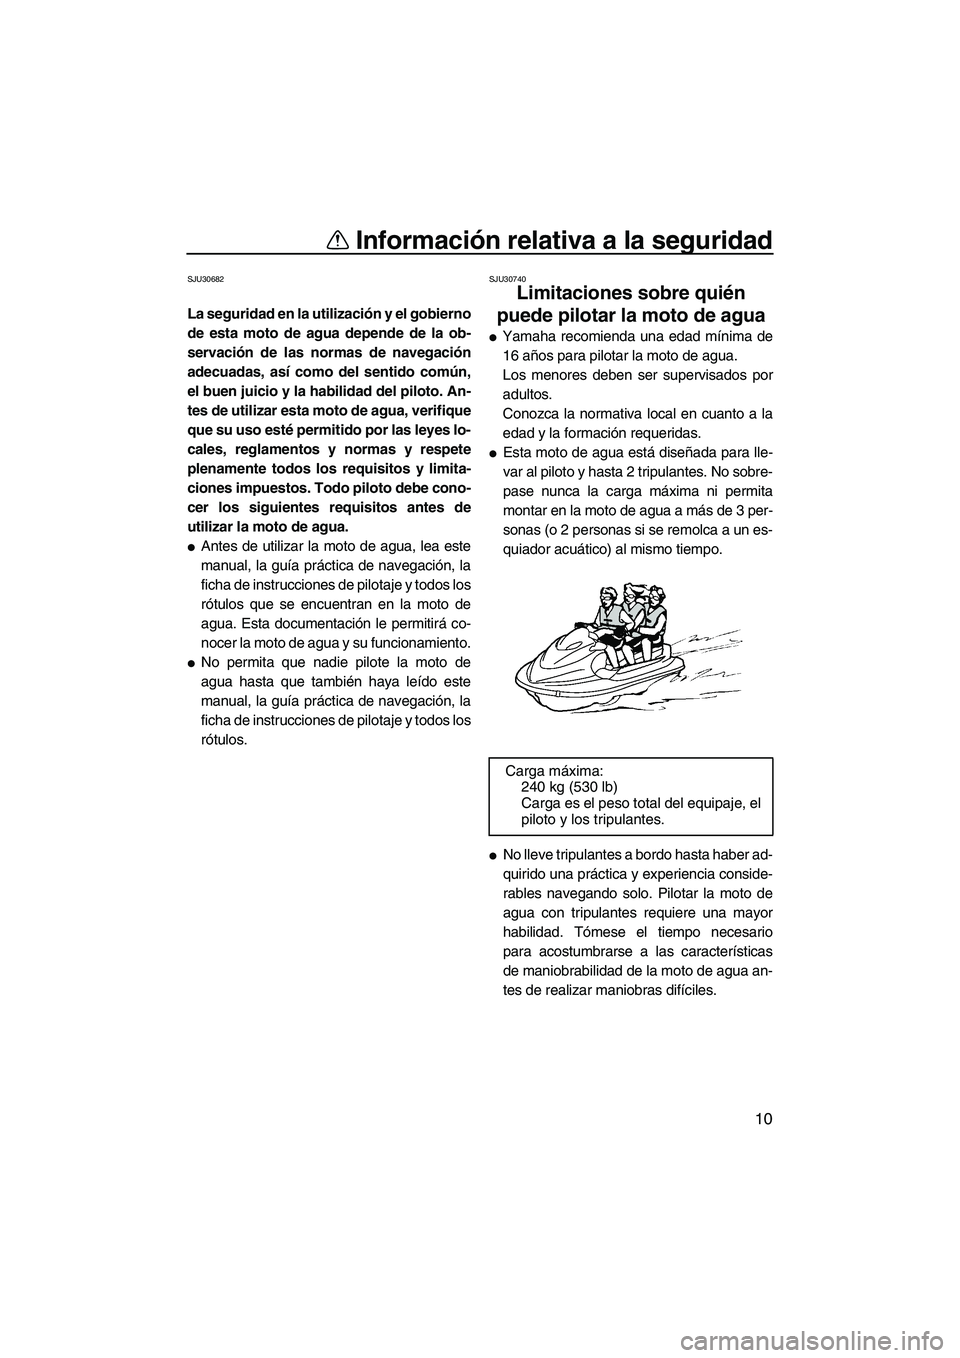 YAMAHA VXS 2013  Manuale de Empleo (in Spanish) Información relativa a la seguridad
10
SJU30682
La seguridad en la utilización y el gobierno
de esta moto de agua depende de la ob-
servación de las normas de navegación
adecuadas, así como del s